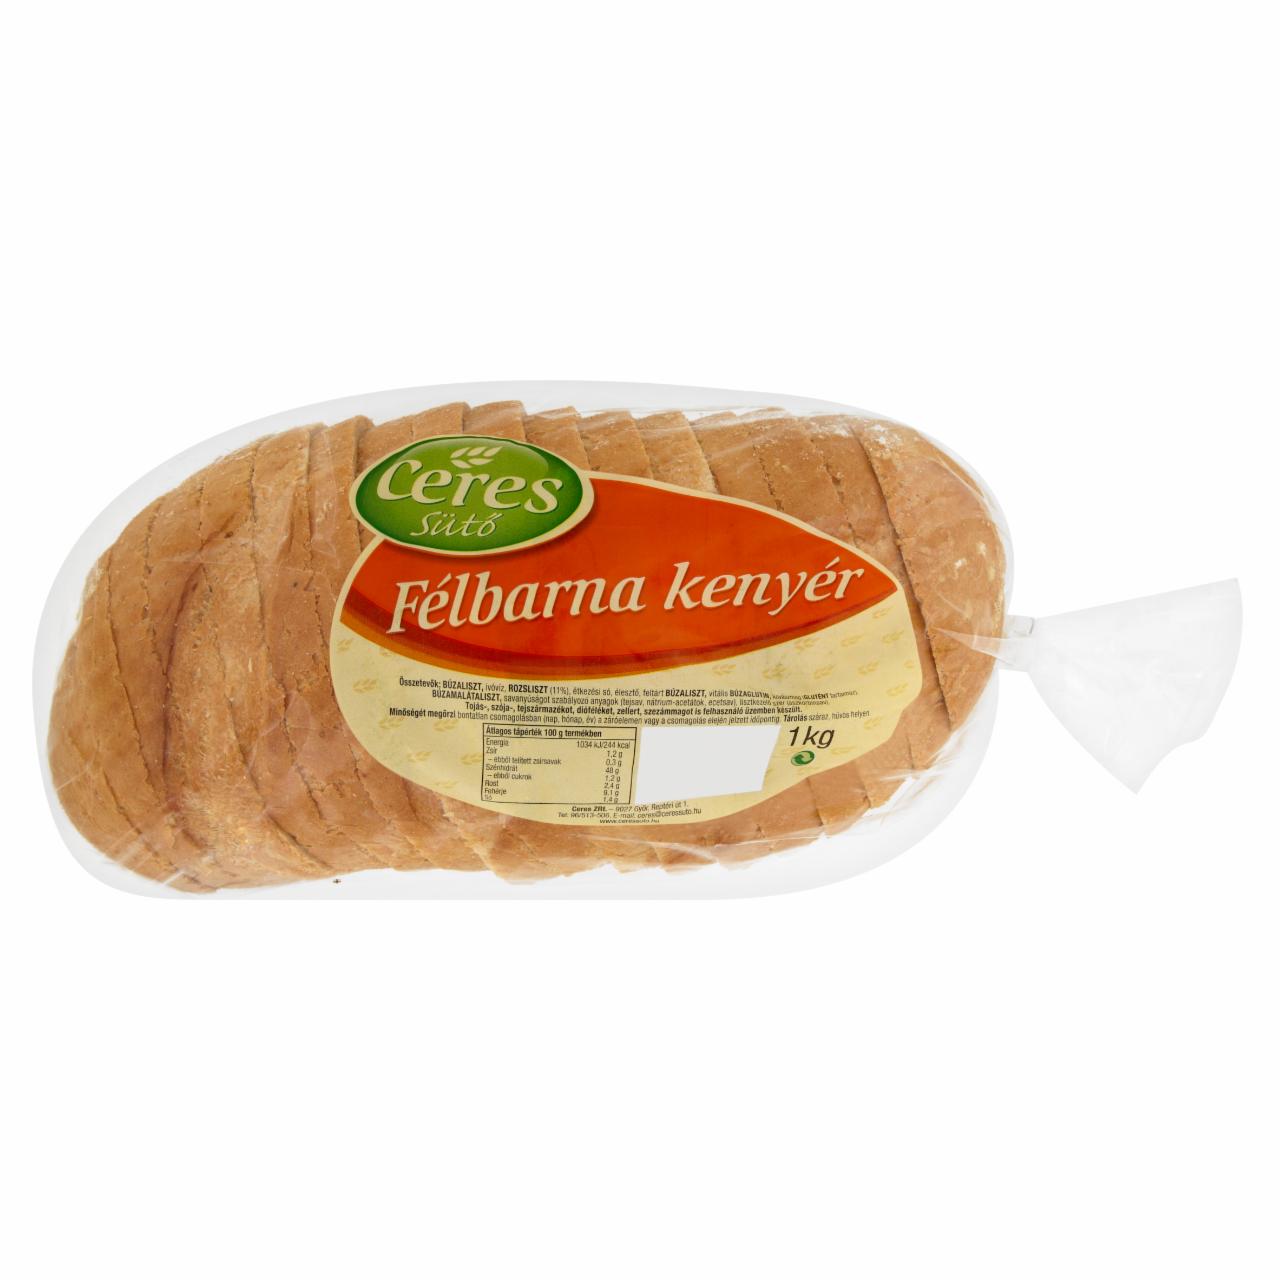 Képek - Ceres Sütő félbarna kenyér 1 kg